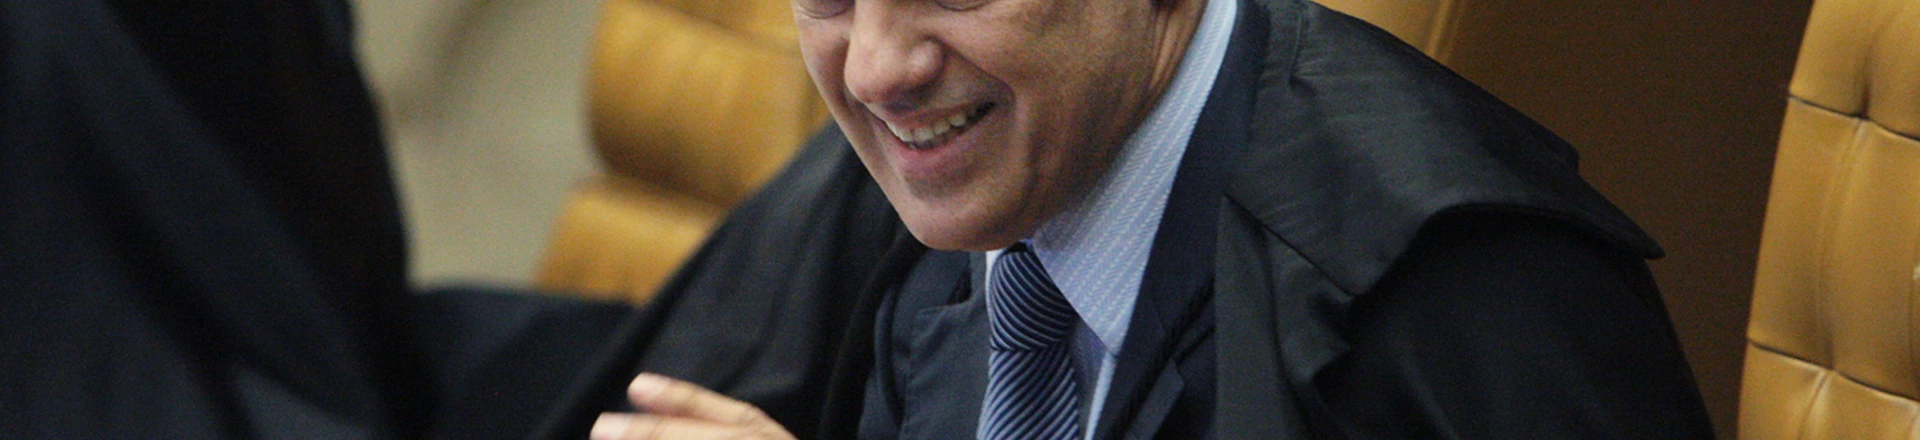 Ministro Alexandre de Moraes durante sessão no STF em 25/10/2017.